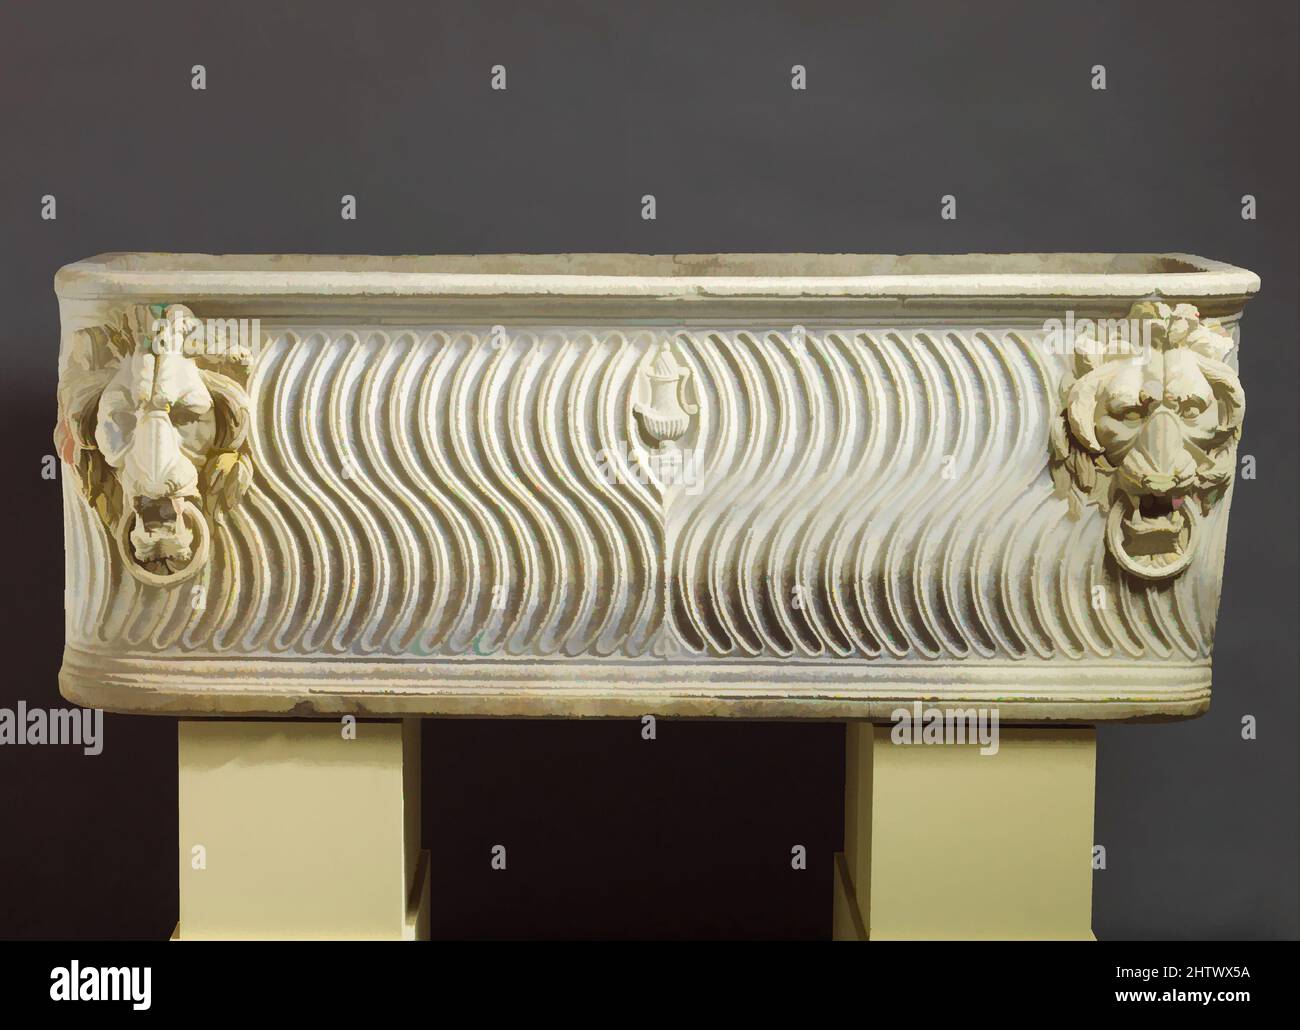 Arte ispirata al sarcofago marmoreo rigilato, imperiale, tardo Severano, ca. A.D. 220, Roman, Marble, dimensioni complessive: h. 32 5/16 x l. 85 7/16 x d. 35 13/16 poll. (82 x 217 x 91 cm), scultura in pietra, il sarcofago è stato arredato con un coperchio e collocato in una tomba monumentale, probabilmente in, opere classiche modernizzate da Artotop con un tuffo di modernità. Forme, colore e valore, impatto visivo accattivante sulle emozioni artistiche attraverso la libertà delle opere d'arte in modo contemporaneo. Un messaggio senza tempo che persegue una nuova direzione selvaggiamente creativa. Artisti che si rivolgono al supporto digitale e creano l'NFT Artotop Foto Stock